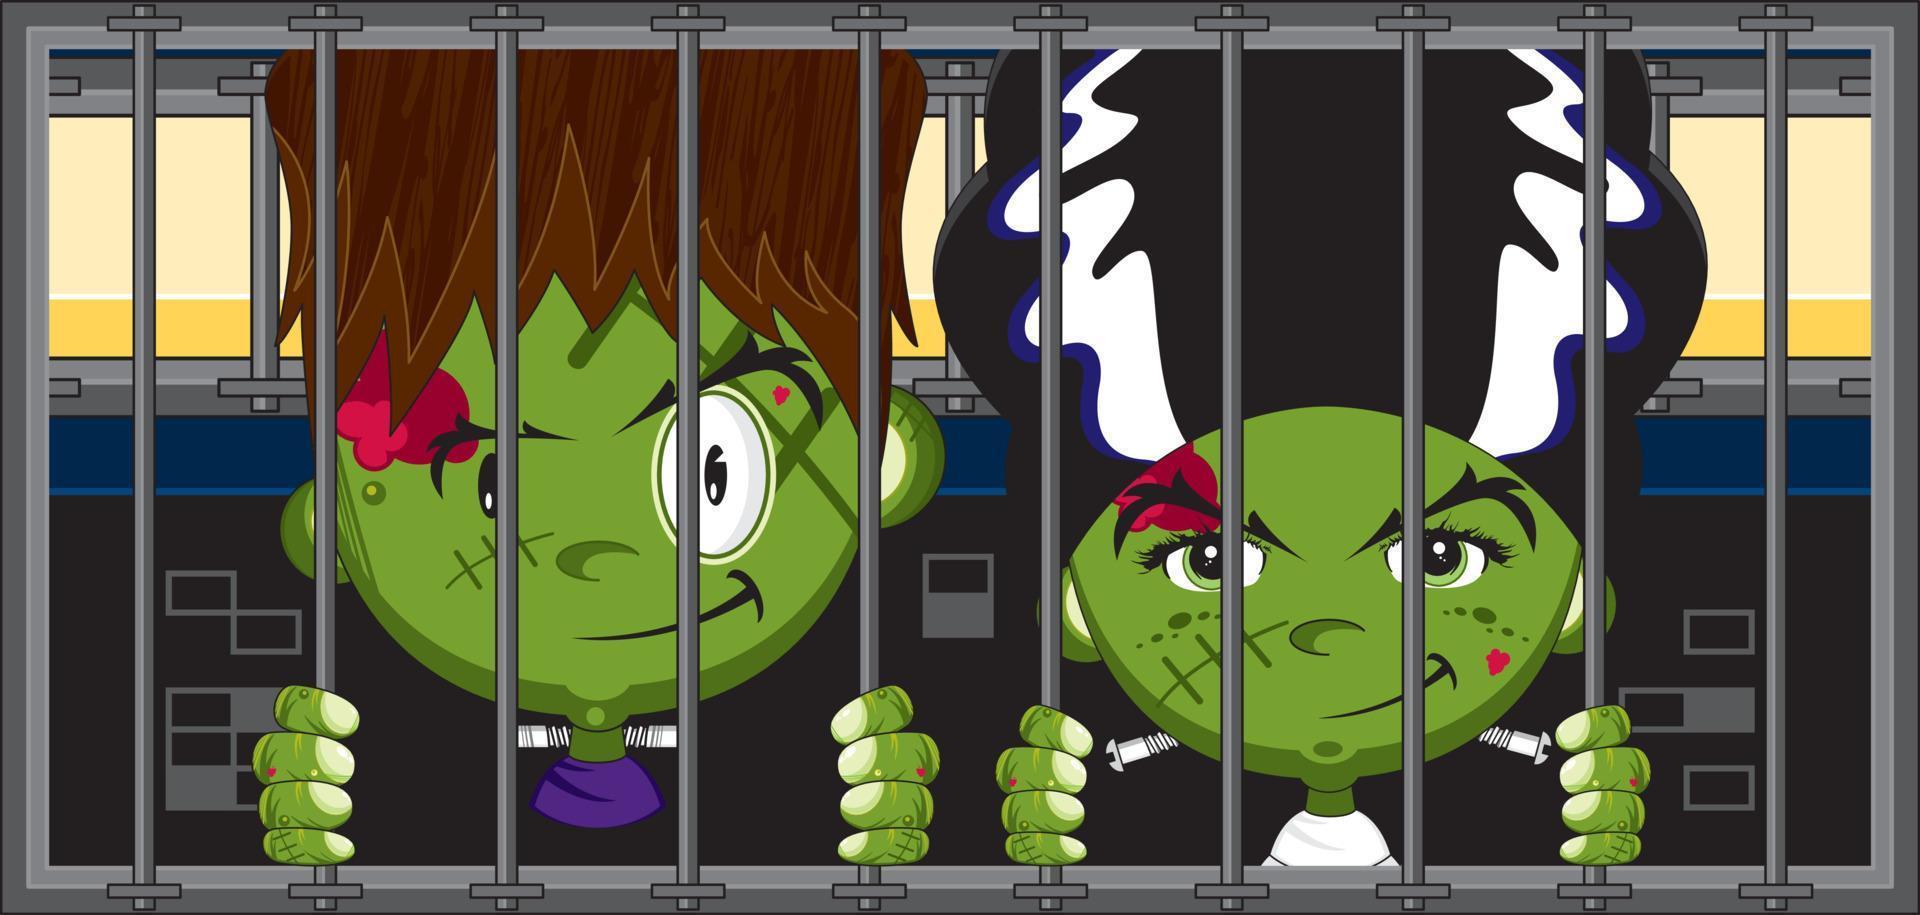 Karikatur unheimlich frankensteins Monster im Gefängnis Zelle - - gespenstisch Halloween Illustration vektor